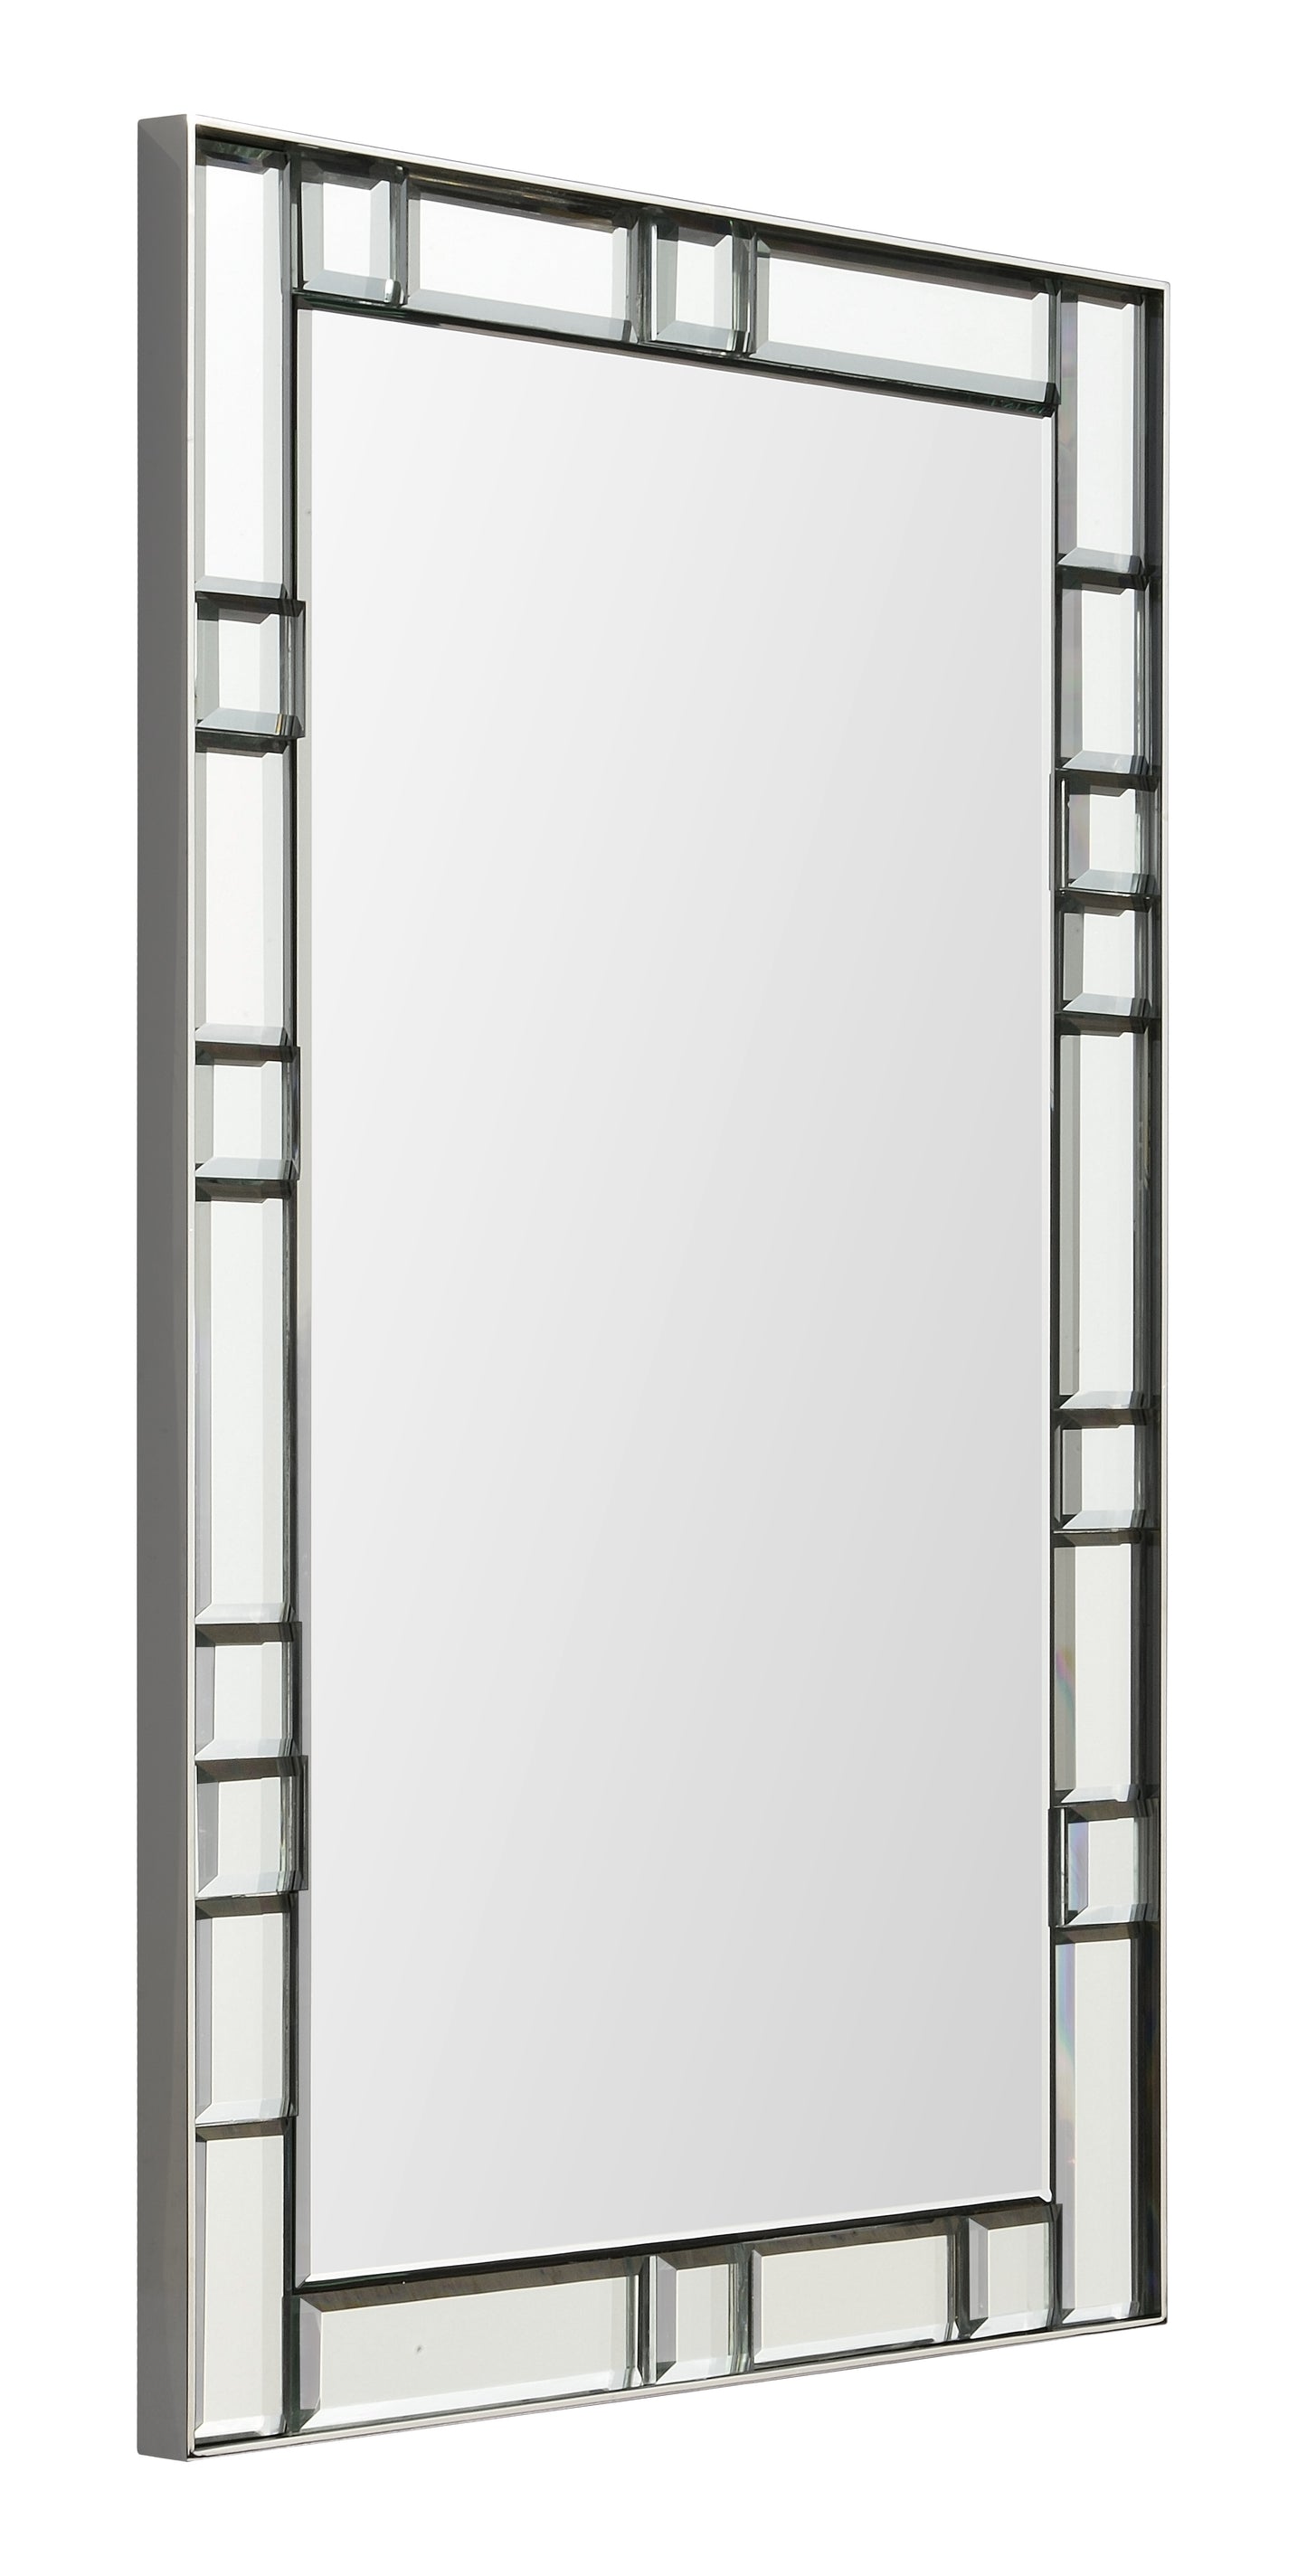 mirror framed mirror